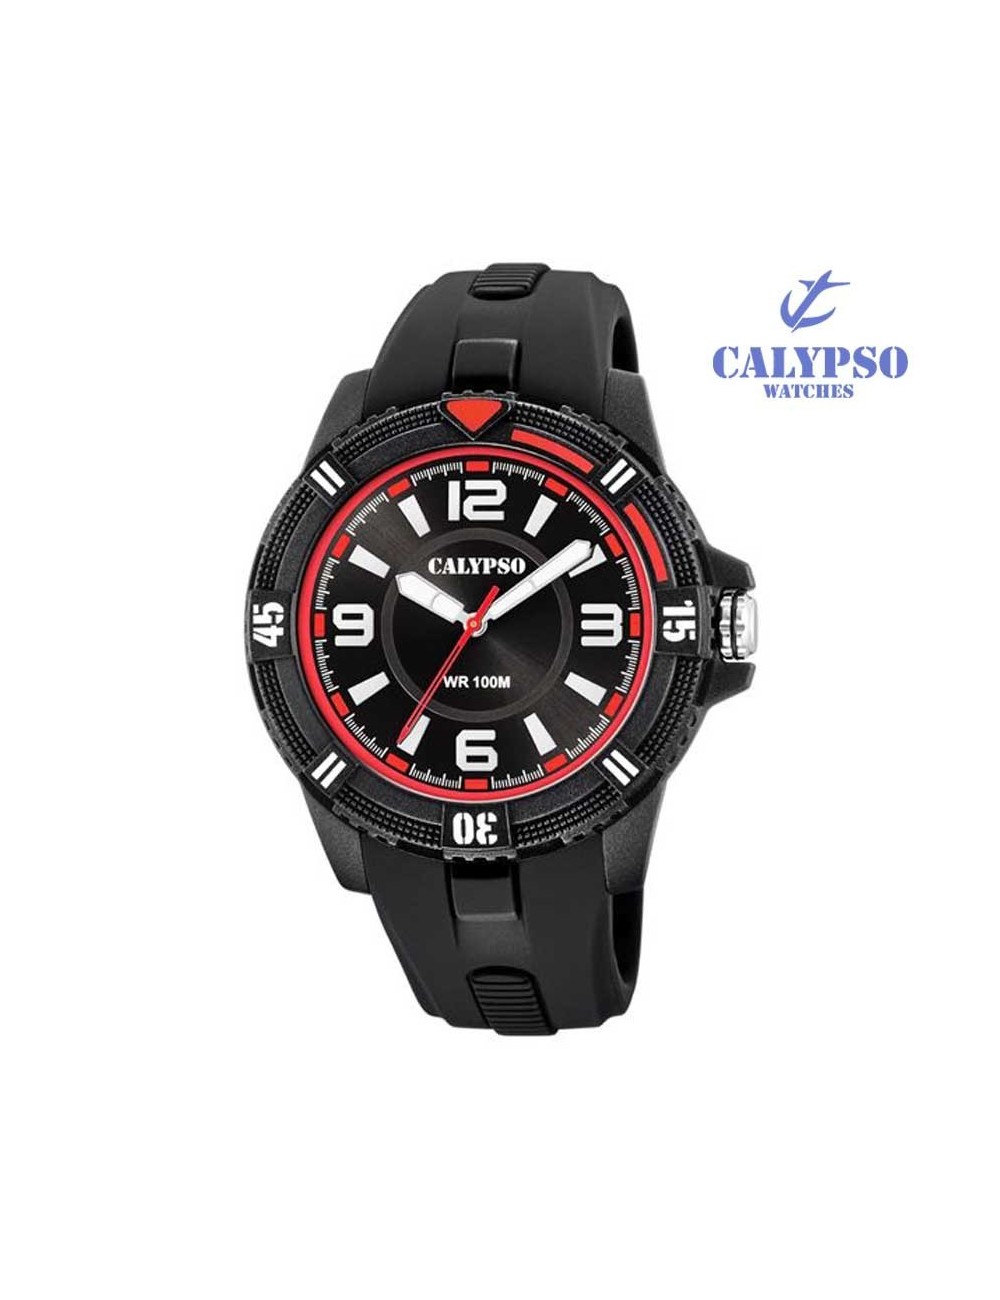 Reloj Calypso hombre K5759-5